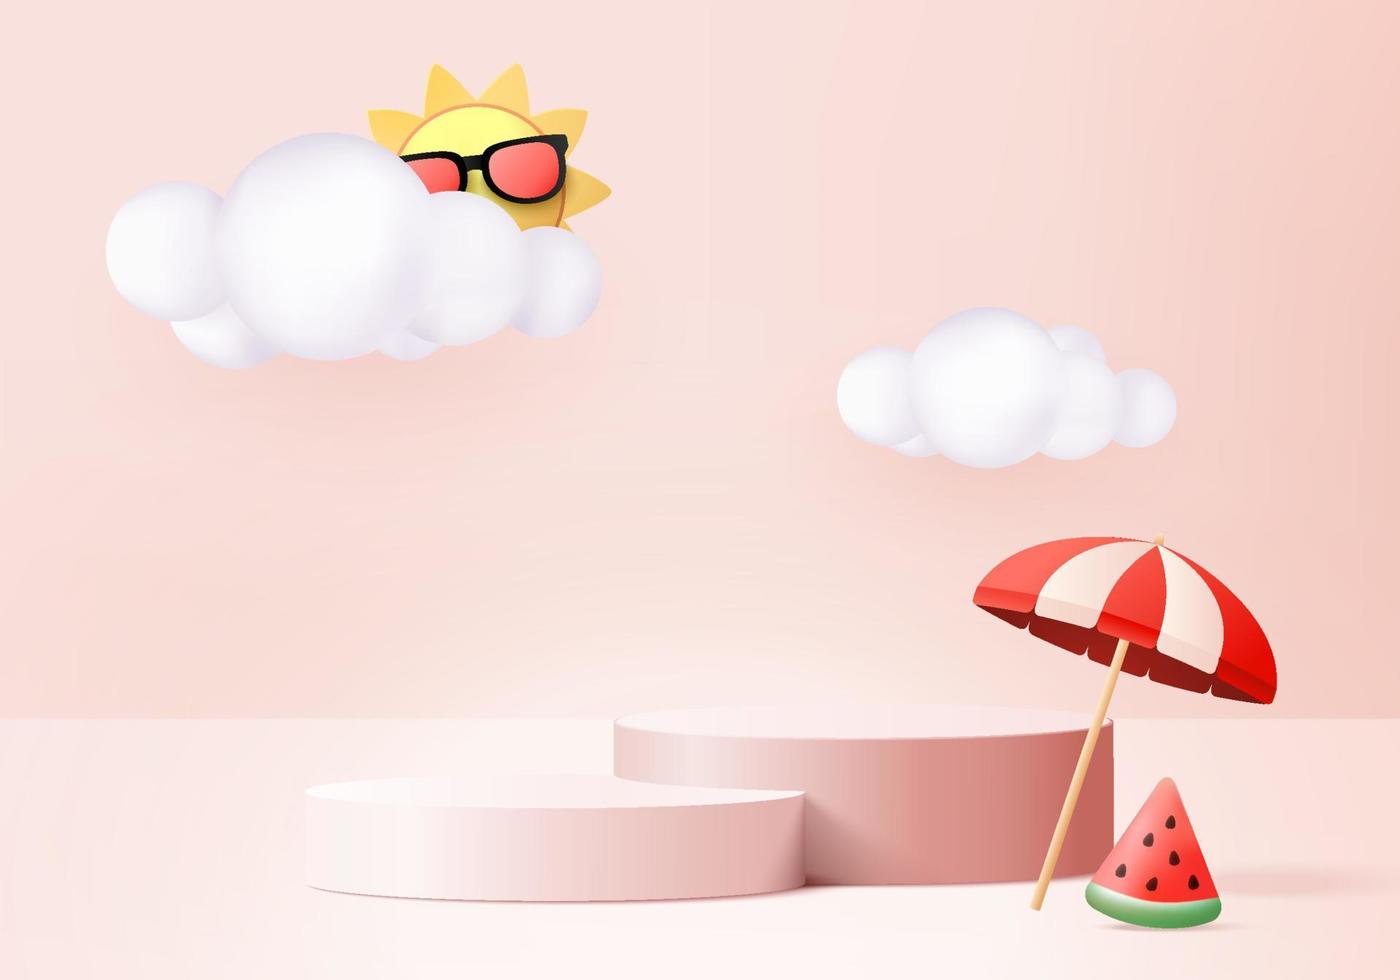 Scène de podium d'affichage de produit de fond d'été 3D avec plate-forme cloud. vecteur été de fond rendu 3d avec soleil, pastèque sur podium rose. stand show affichage de produits cosmétiques studio rose